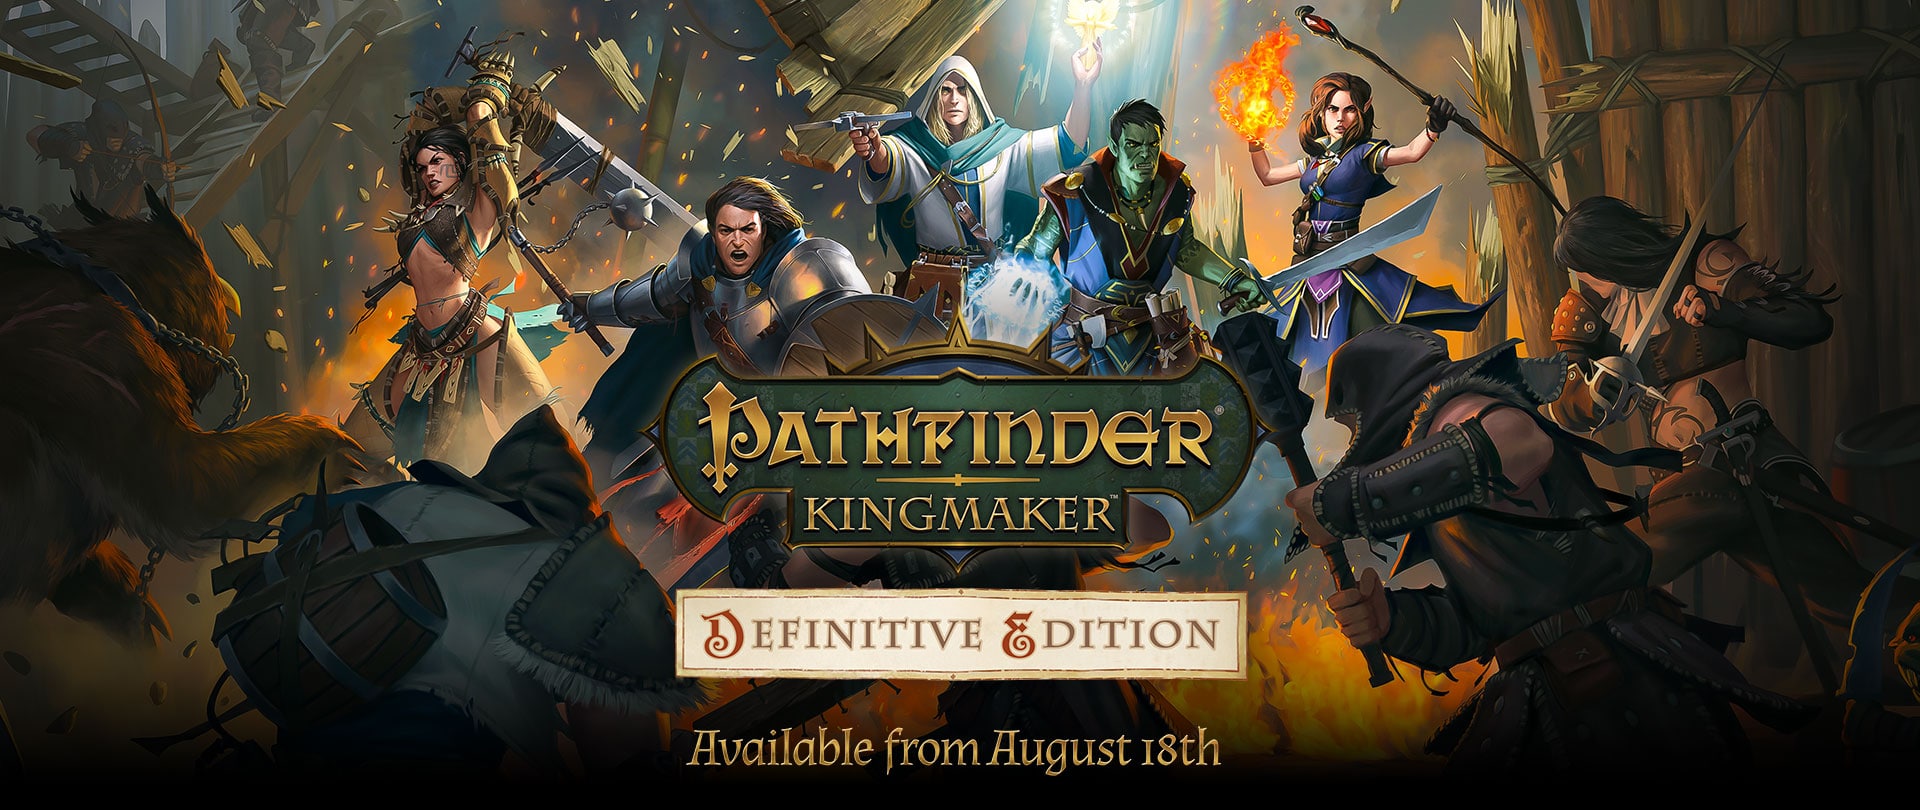 Pathfinder, Pathfinder Kingmaker, Pathfinder Kingmaker Definitive Edition, Pathfinder Kingmaker PlayStation 4, Pathfinder Kingmaker Xbox One